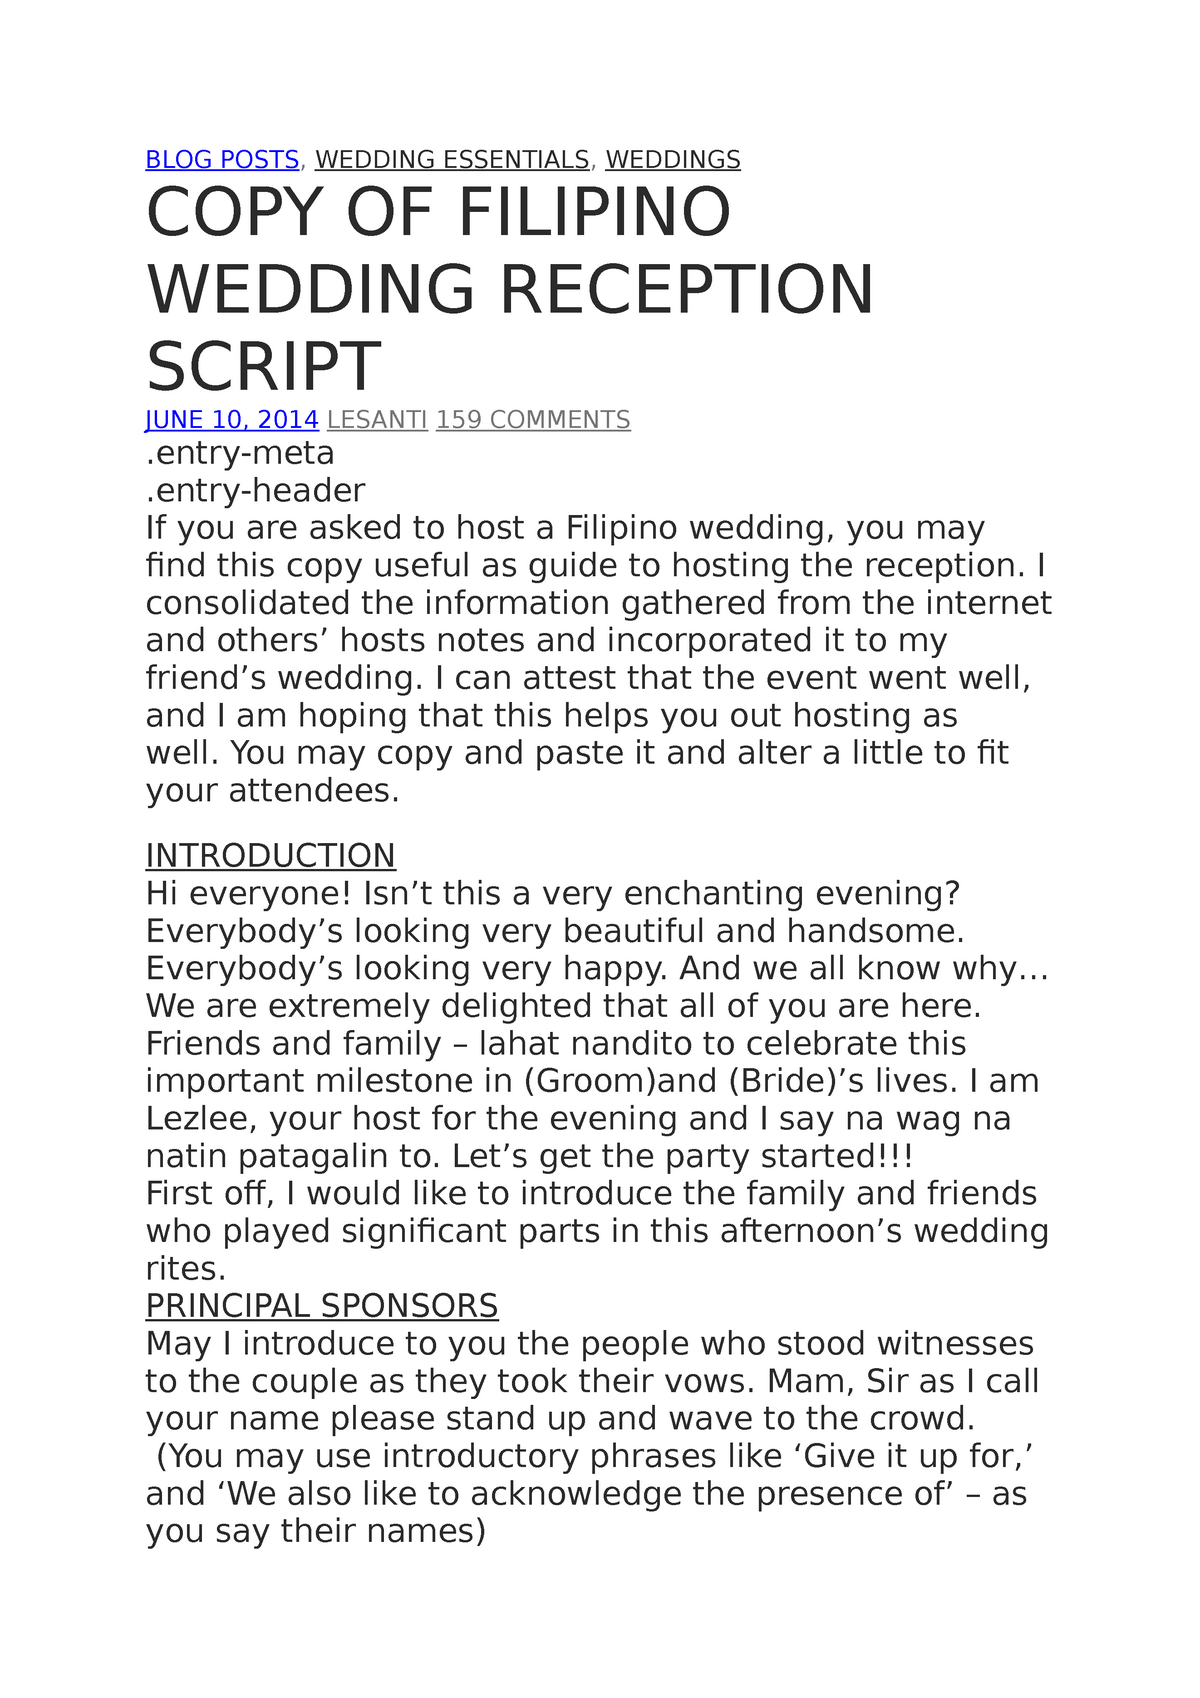 emcee for wedding script